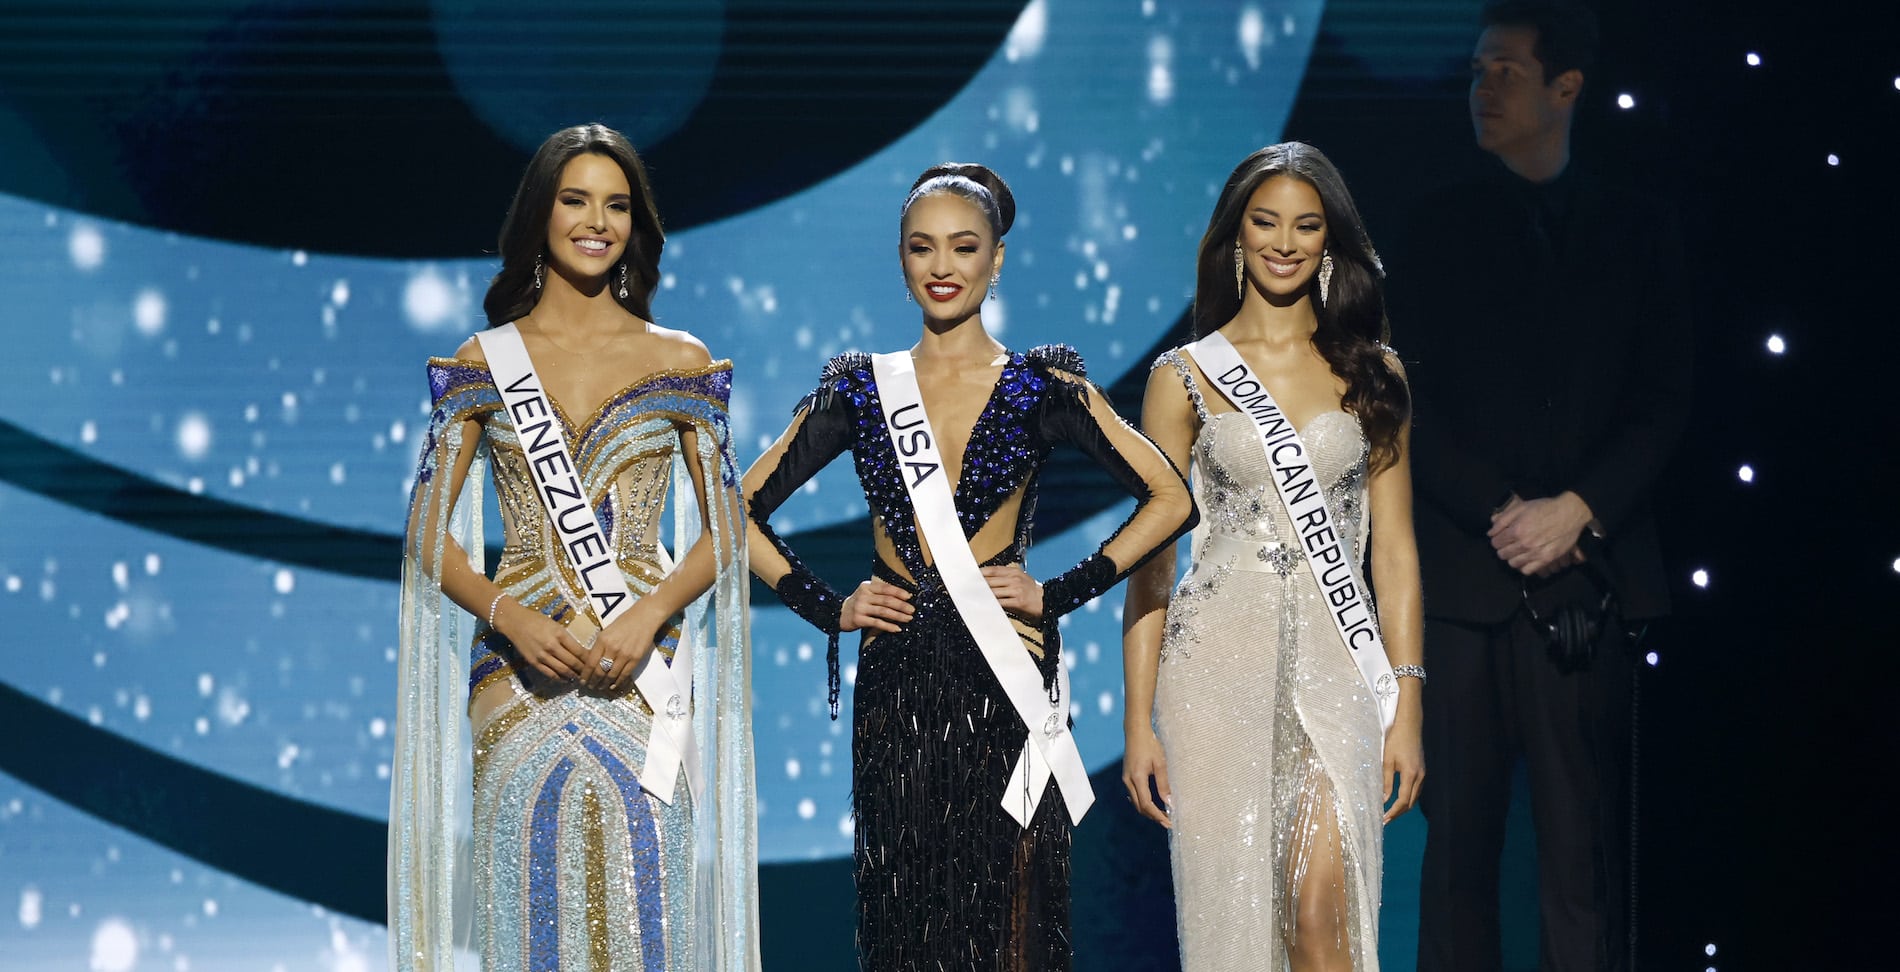 “Miss Universo está comprado, es un robo”: el enojo en redes sociales por la escogencia de Miss USA como ganadora